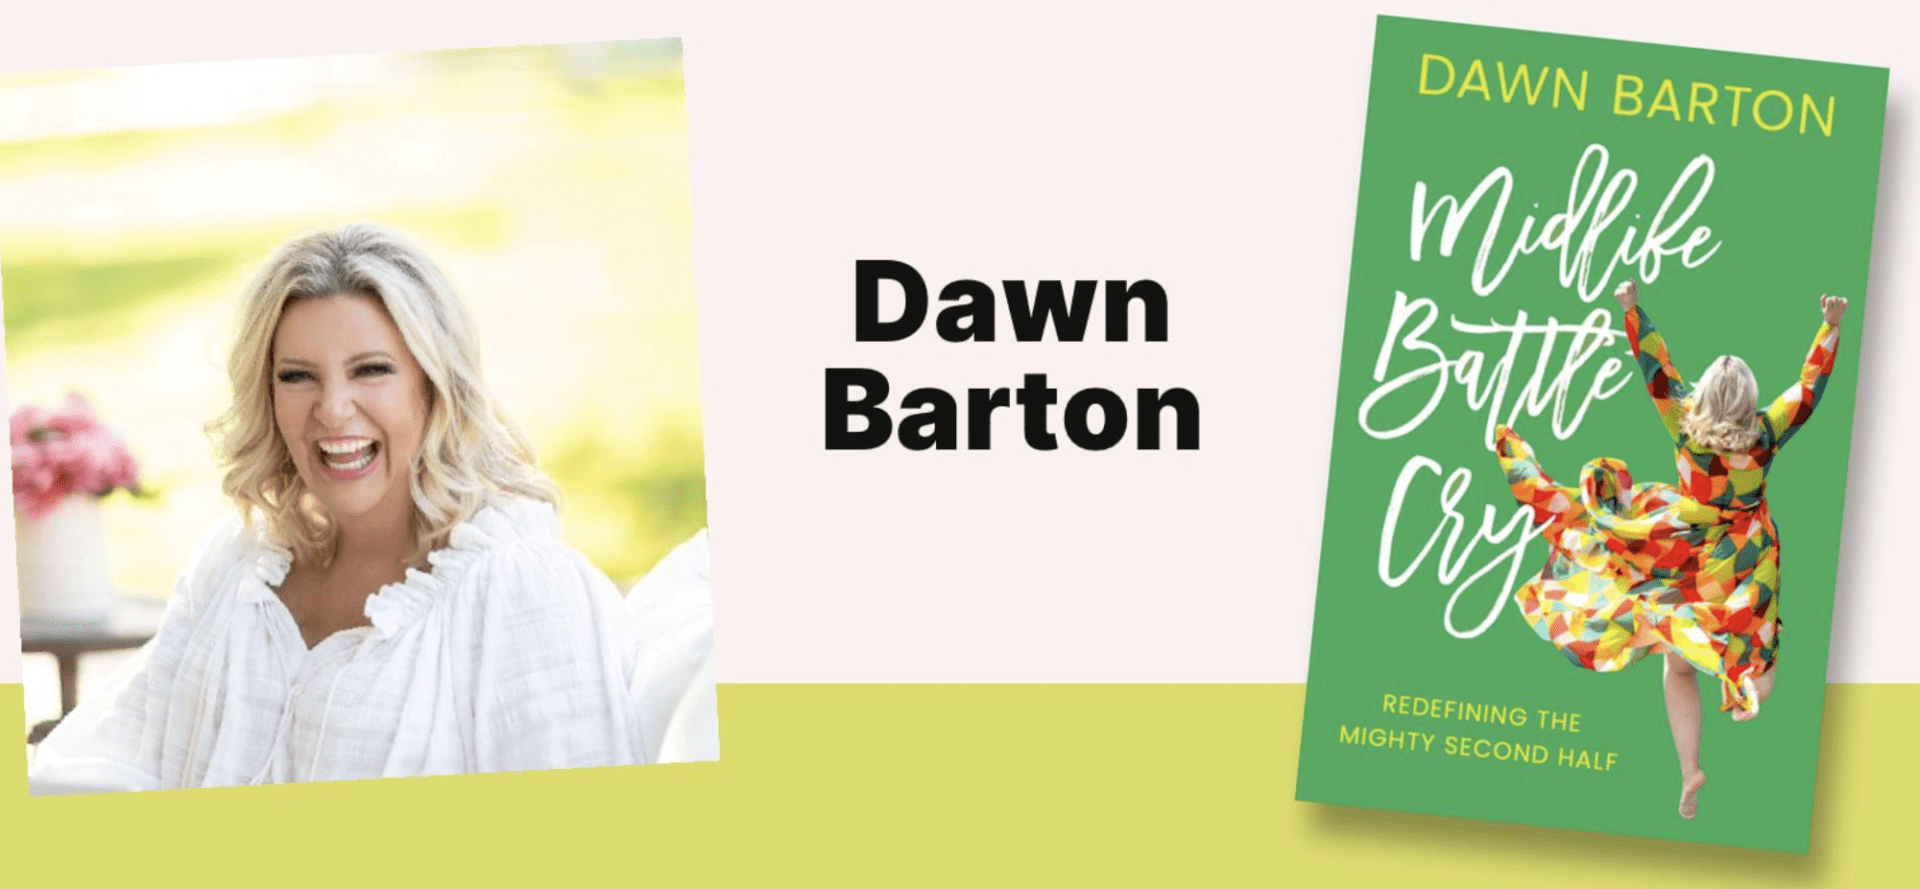 Dawn Barton Author Meet & Greet in downtown Franklin, TN.